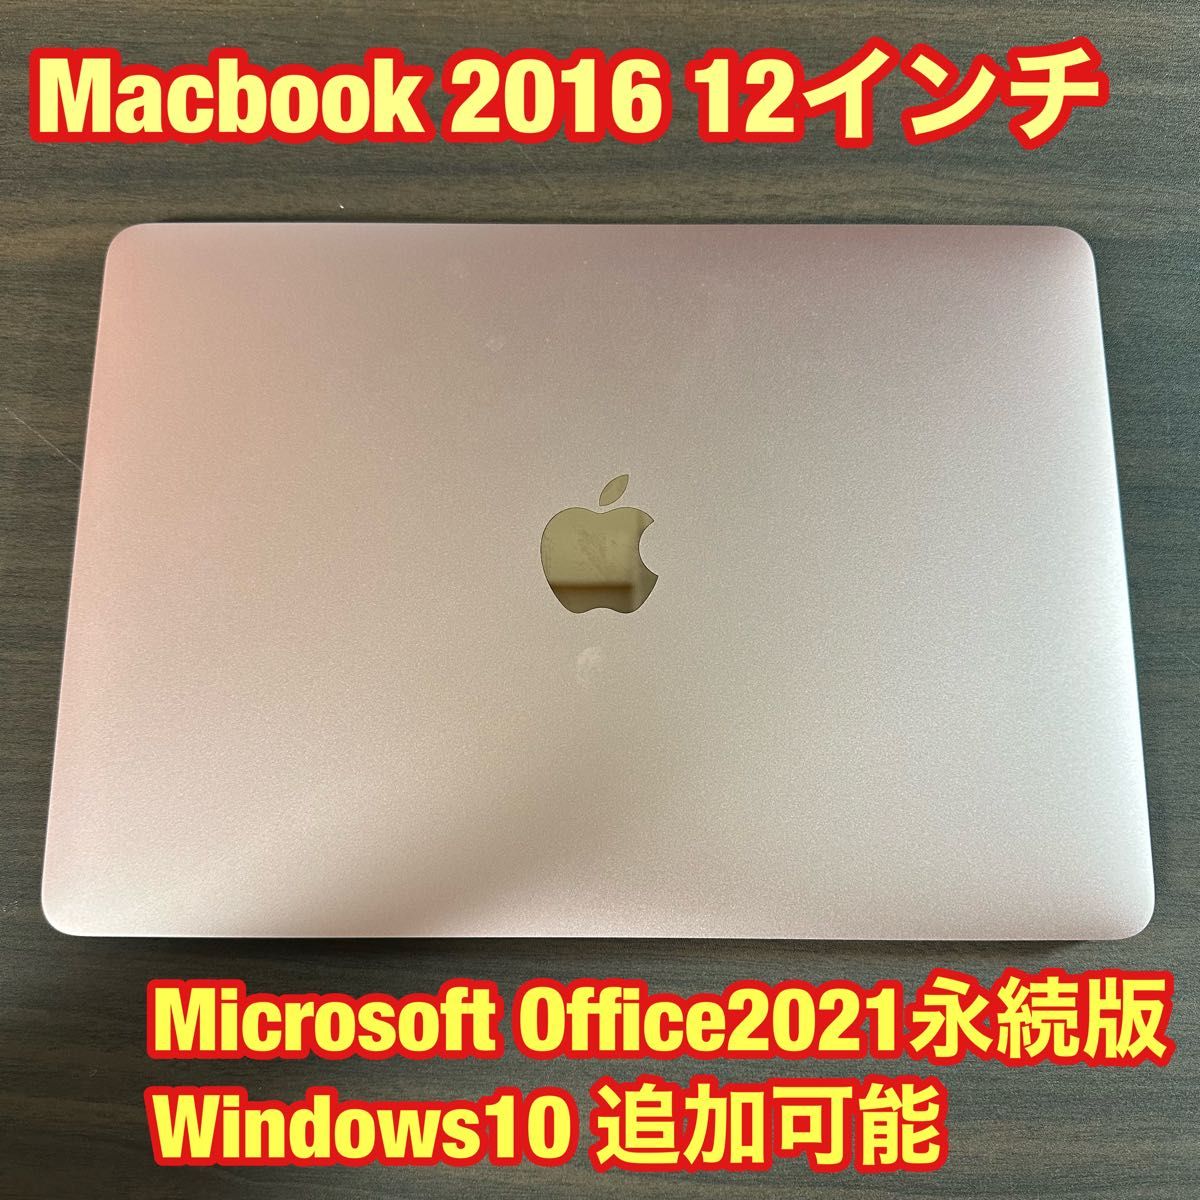 Macbook 12インチ 2016 ピンクゴールド バッテリー新品-